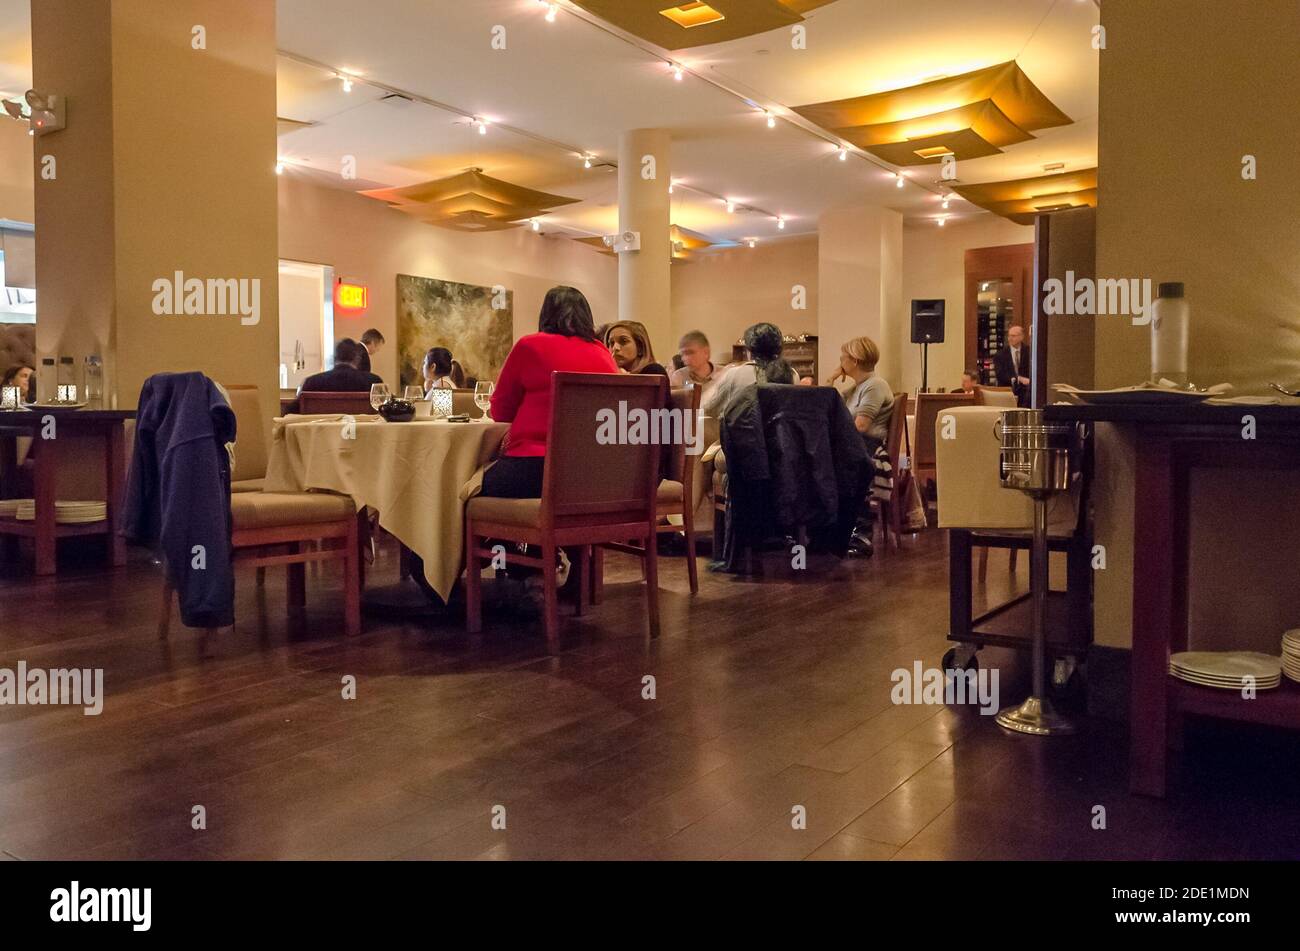 Groupe de personnes manger et se préparer à célébrer la Saint-Sylvestre dans un restaurant indien. Intérieur élégant. Manhattan, New York, États-Unis Banque D'Images